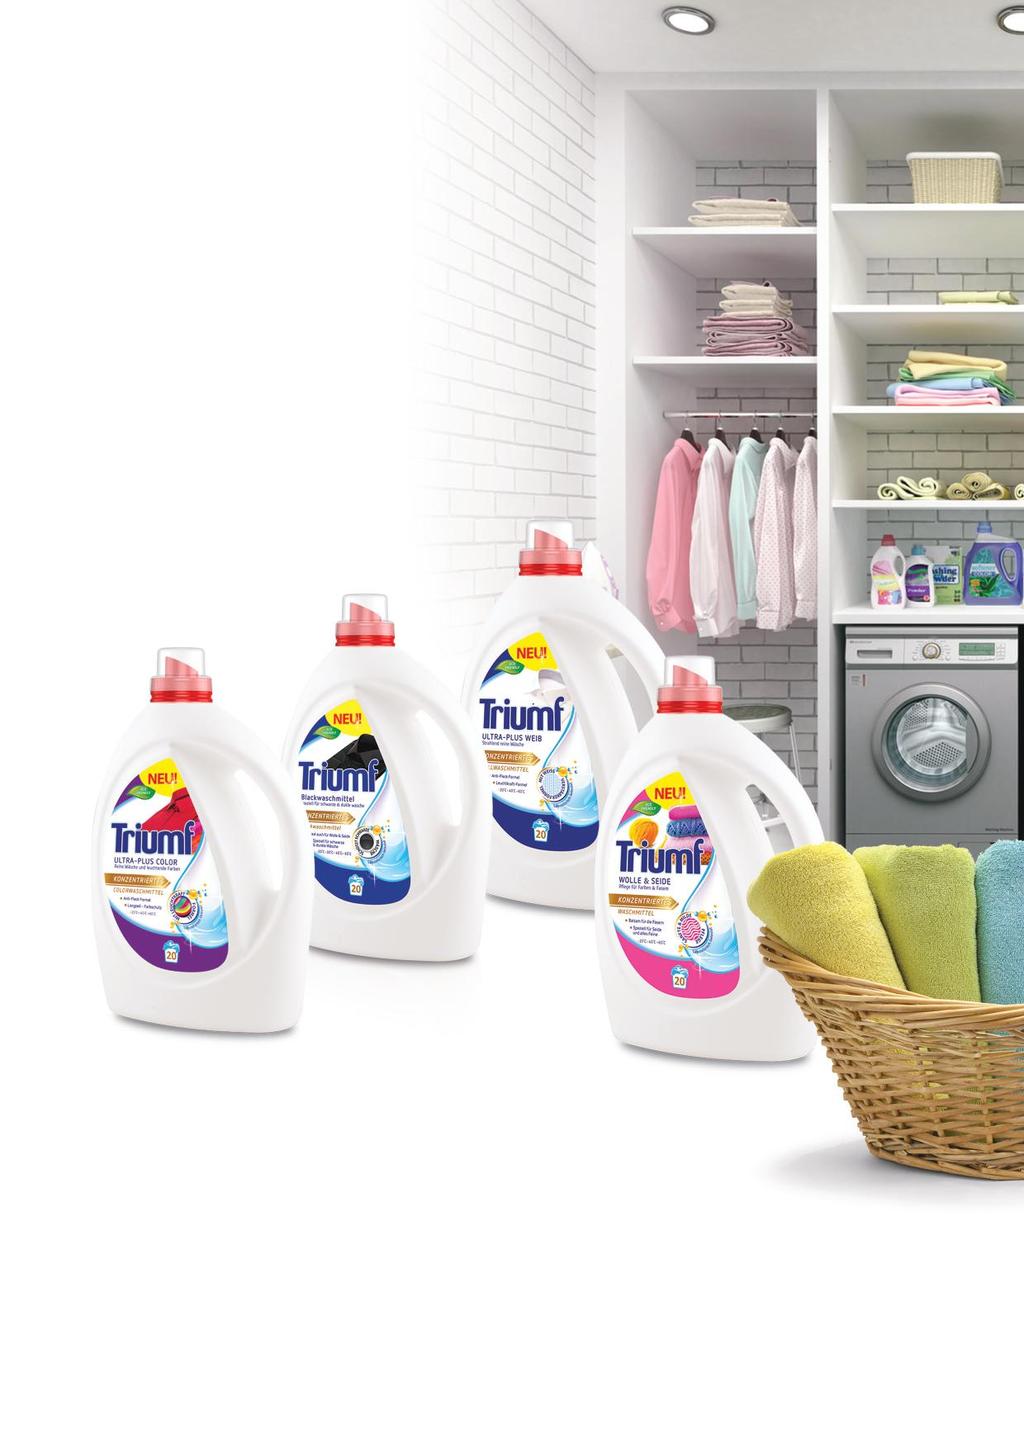 PŁYNY DO PRANIA 1 L Wysoko skoncentrowane płyny do prania Triumf to doskonałe płynne detergenty do prania w pralkach automatycznych jak i prania ręcznego, w temperaturach od 30 C do 60 C.